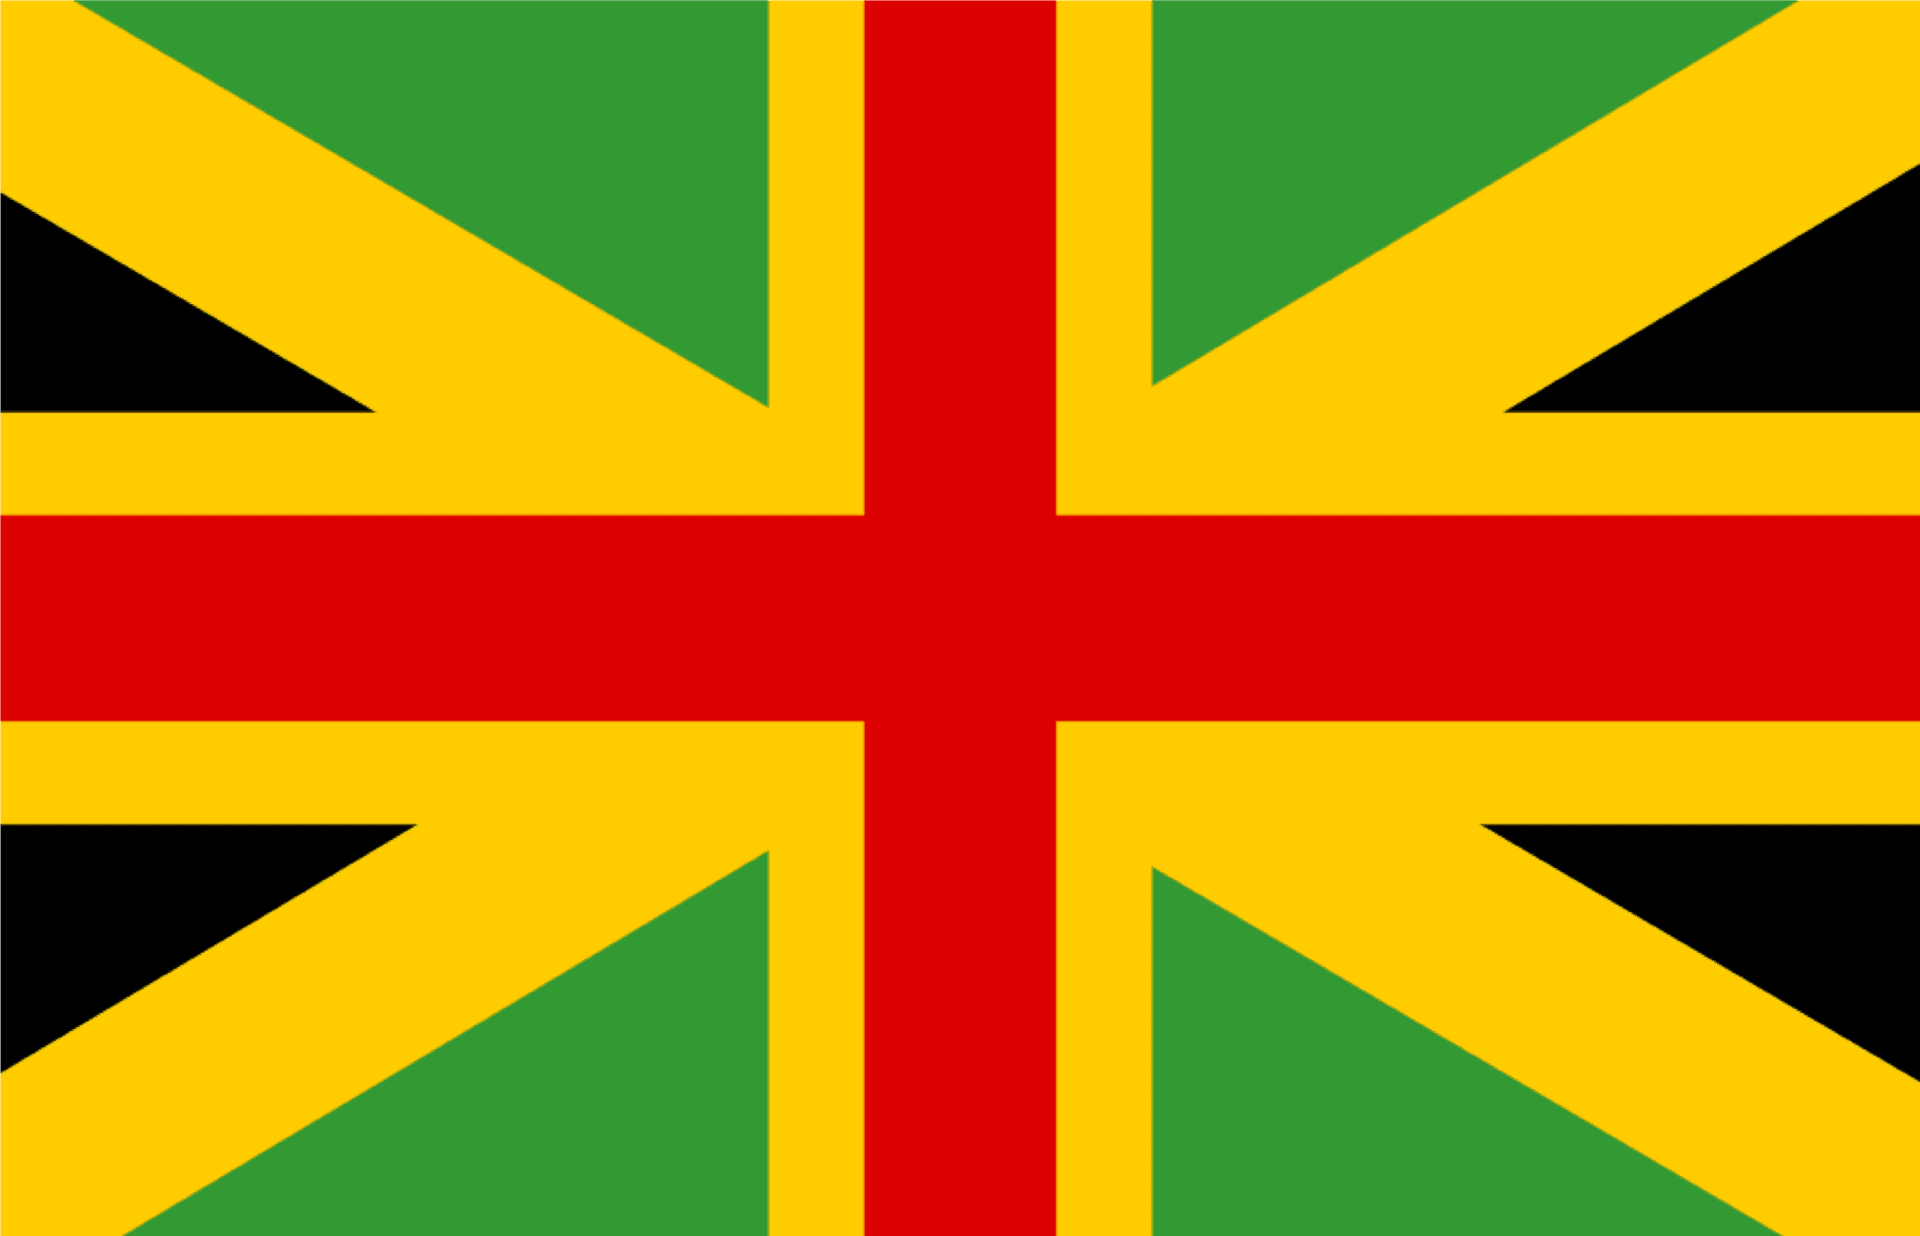 Flagof Jamaica Design PNG